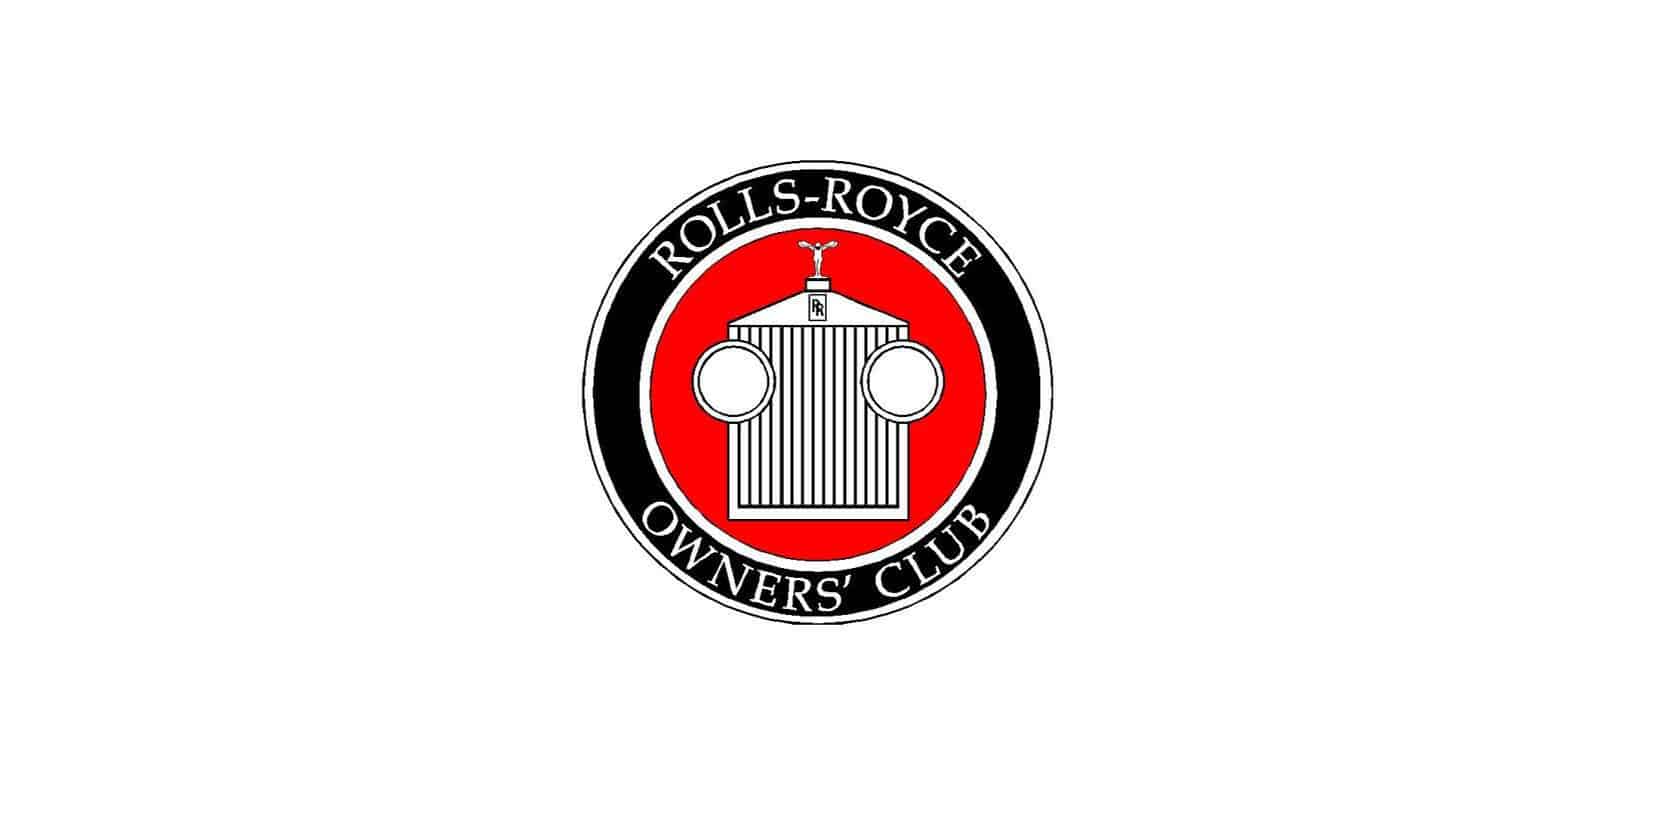 Rolls-Royce Owners’ Club